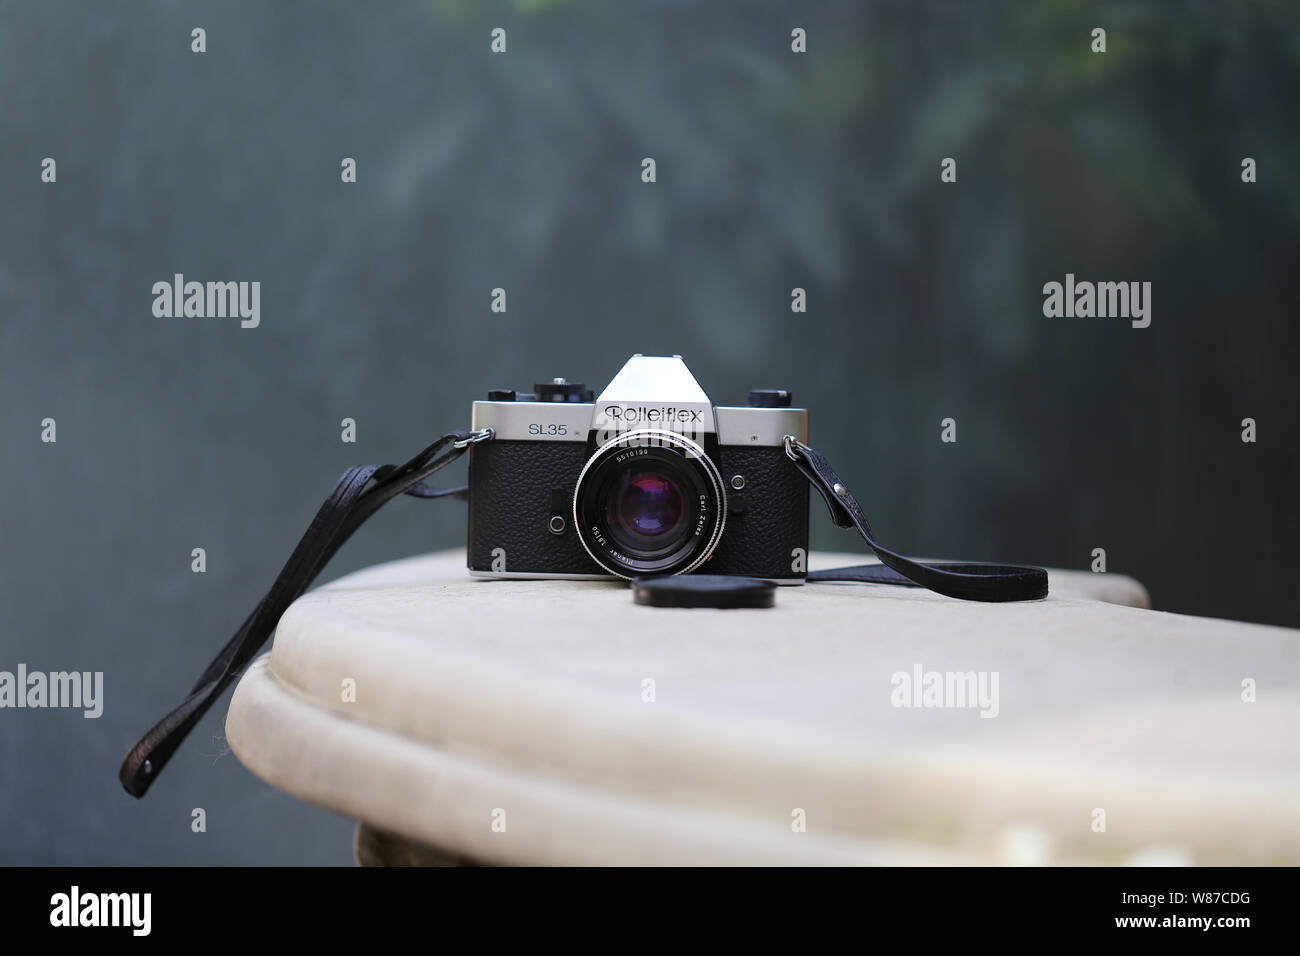 Analoge Kamera Rolleiflex SL35 Carl Zeiss Stock Photo - Alamy